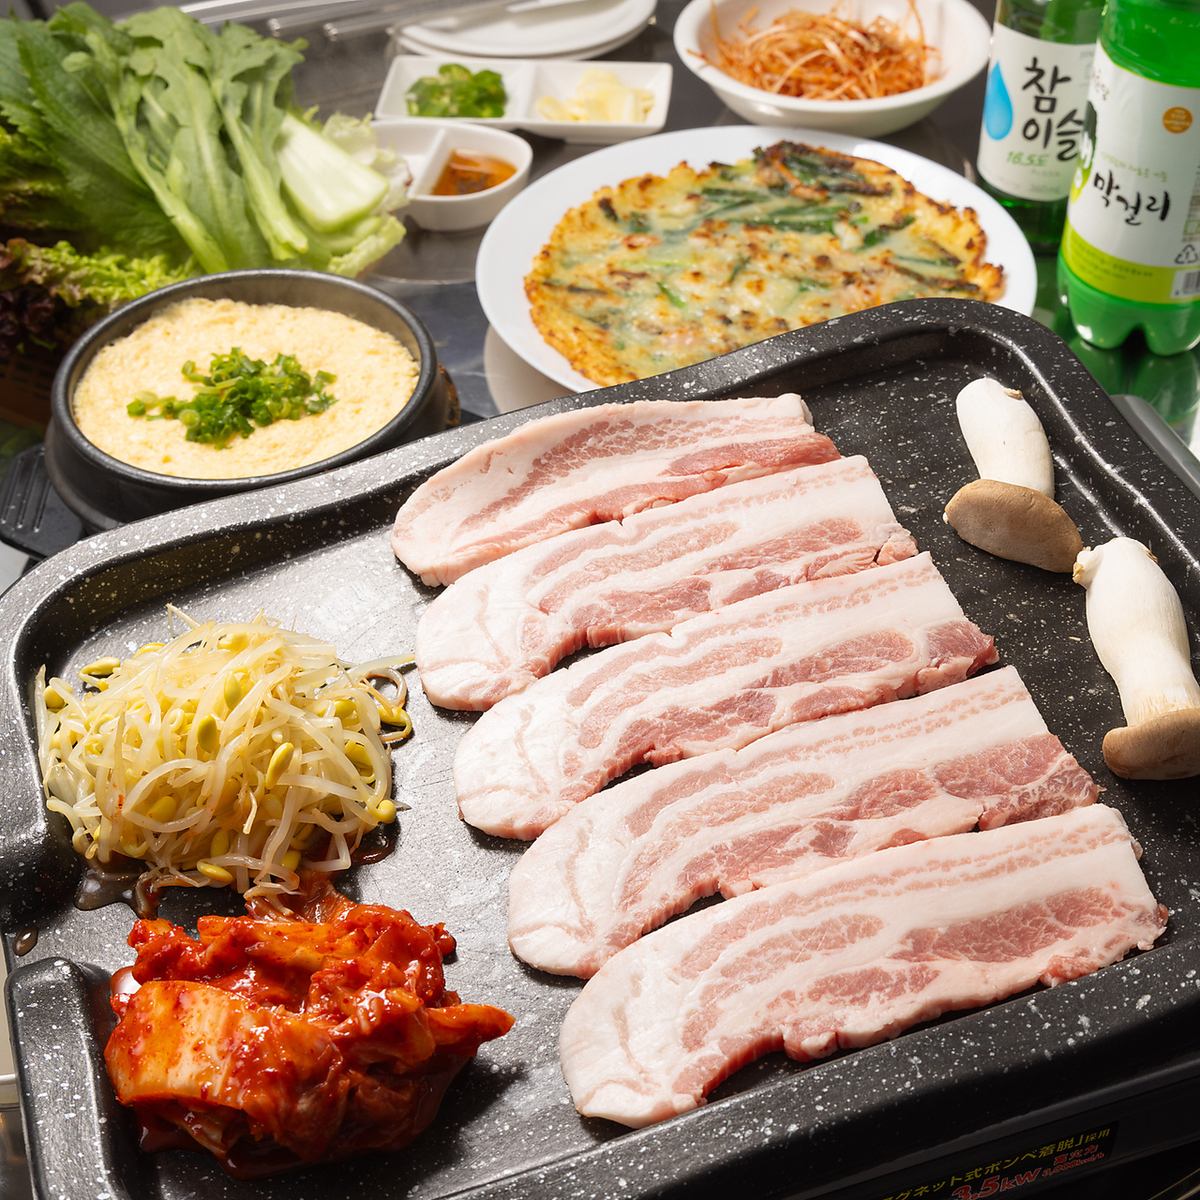 享受我們推薦的五花肉♪無限暢飲套餐5,500日元